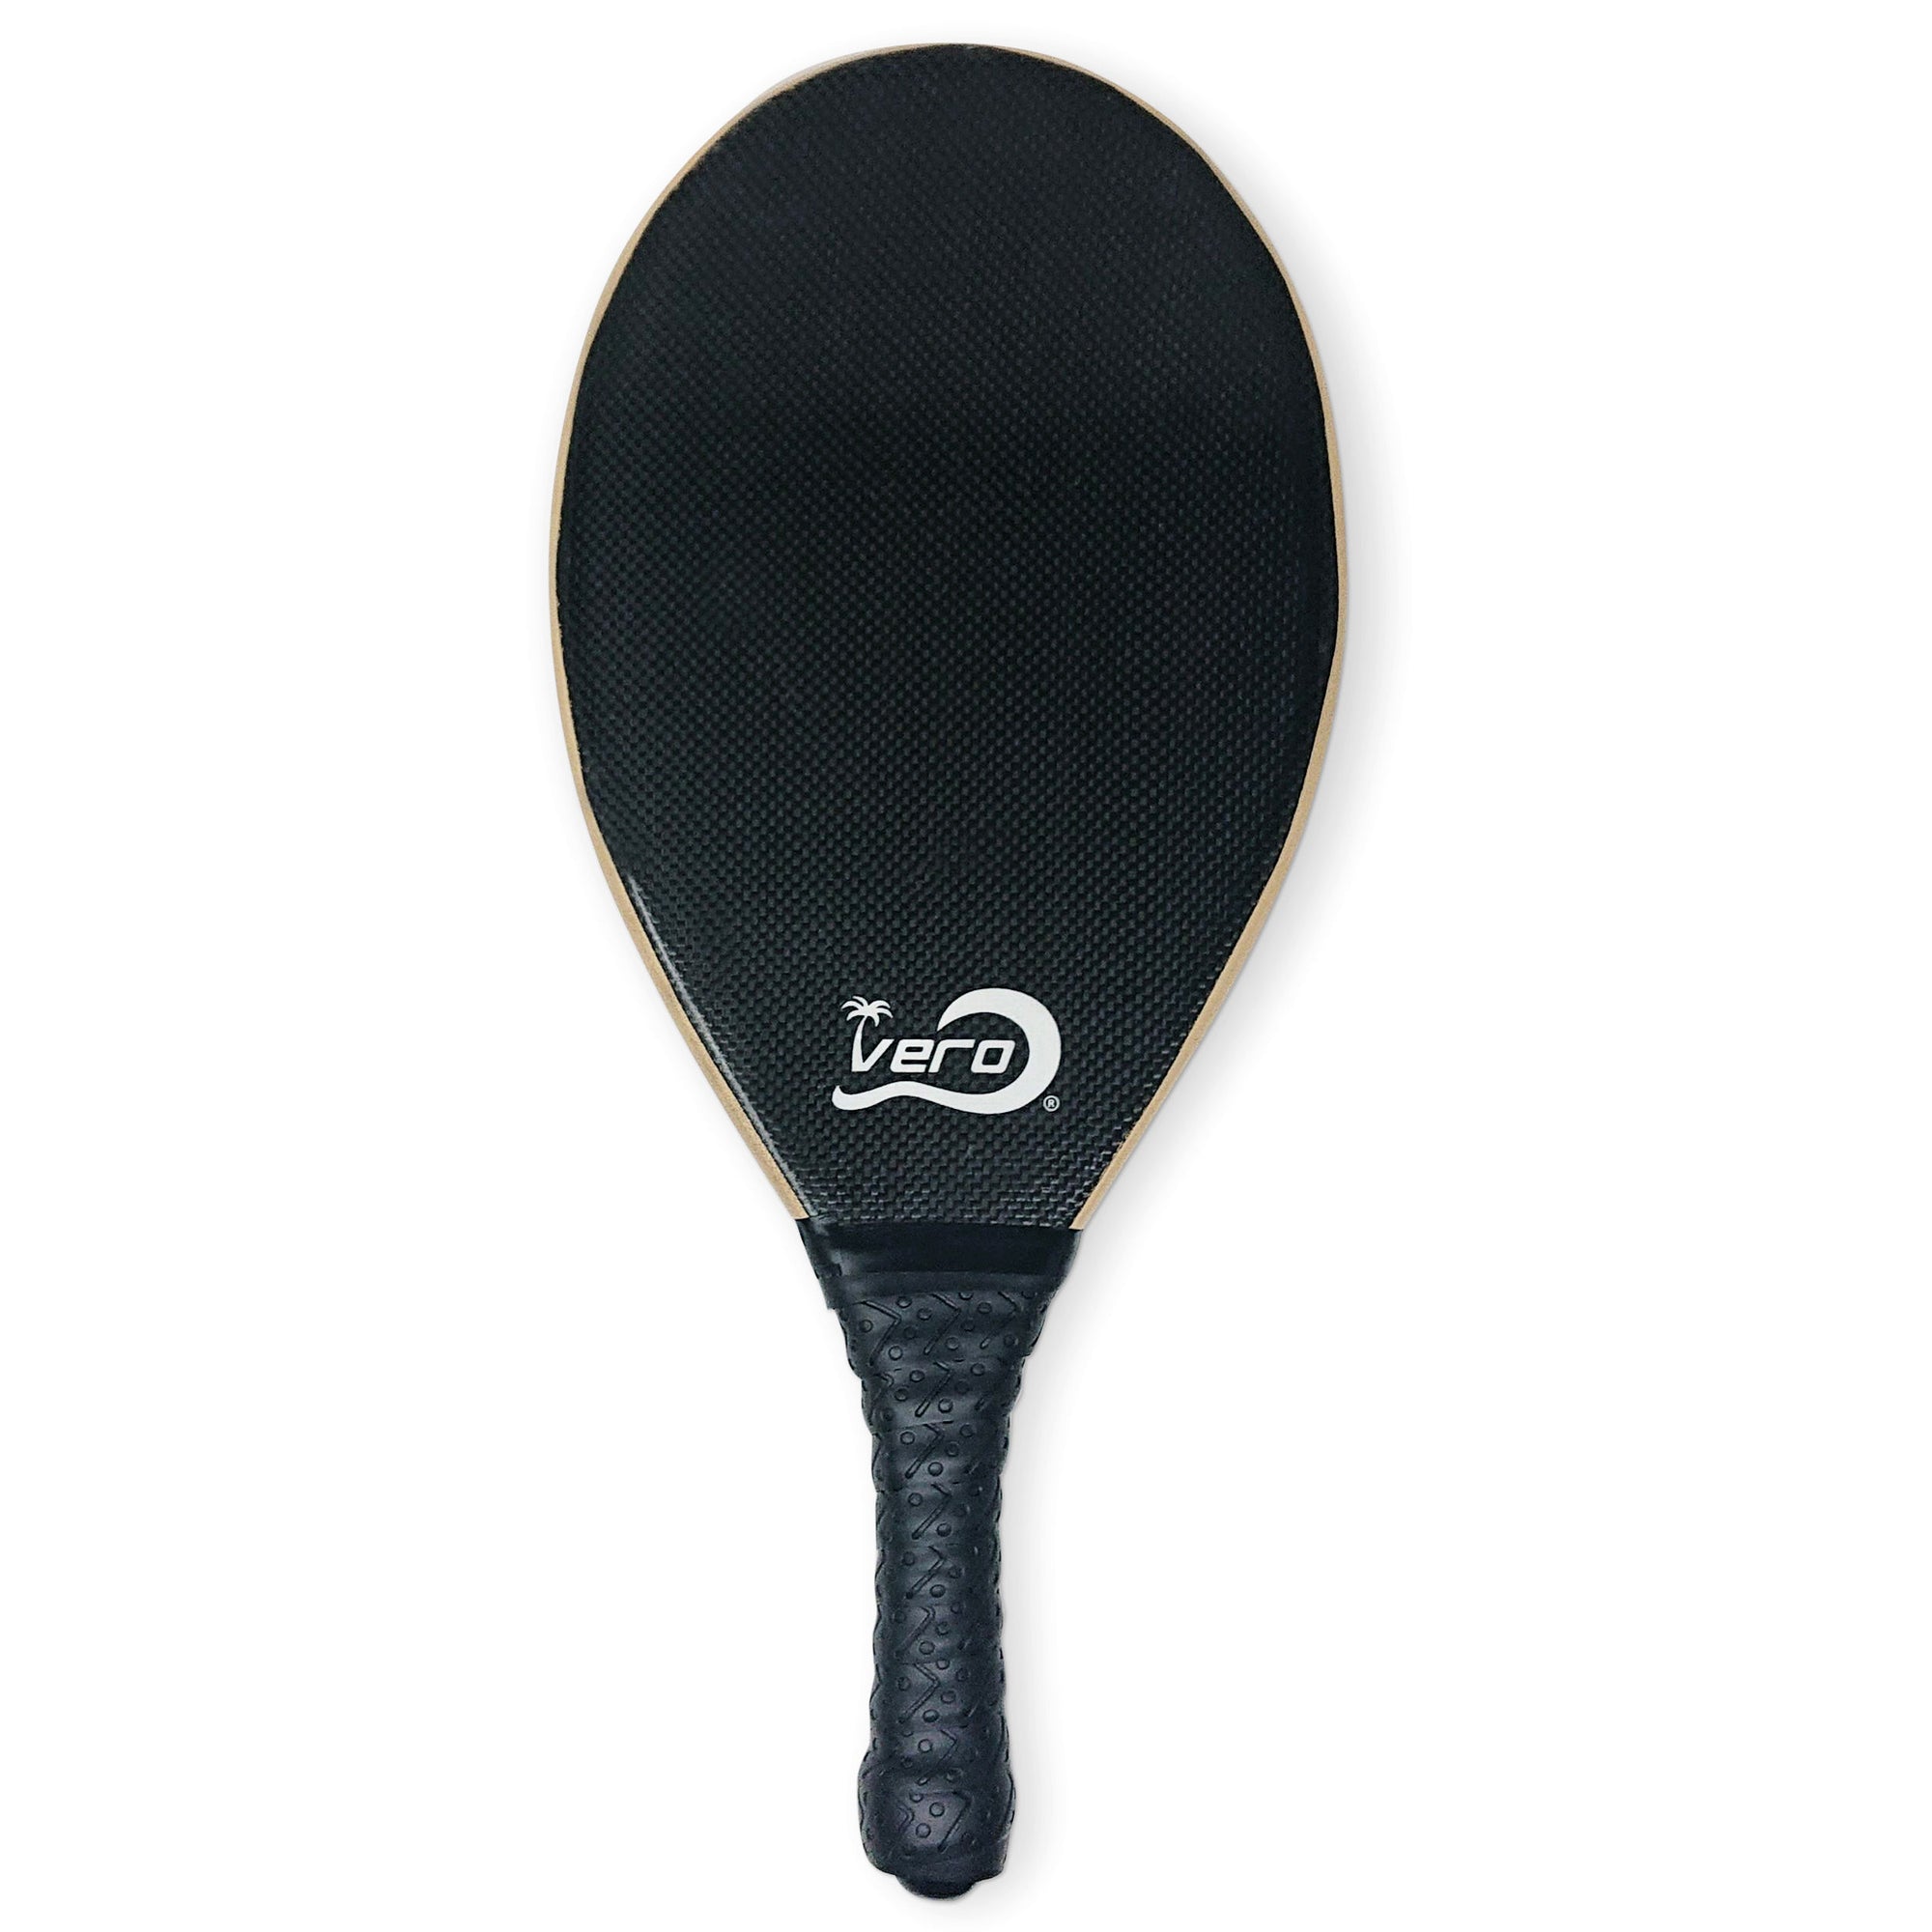 One Black Carbon Fiber Scratch-n-dent Frescobol Paddle